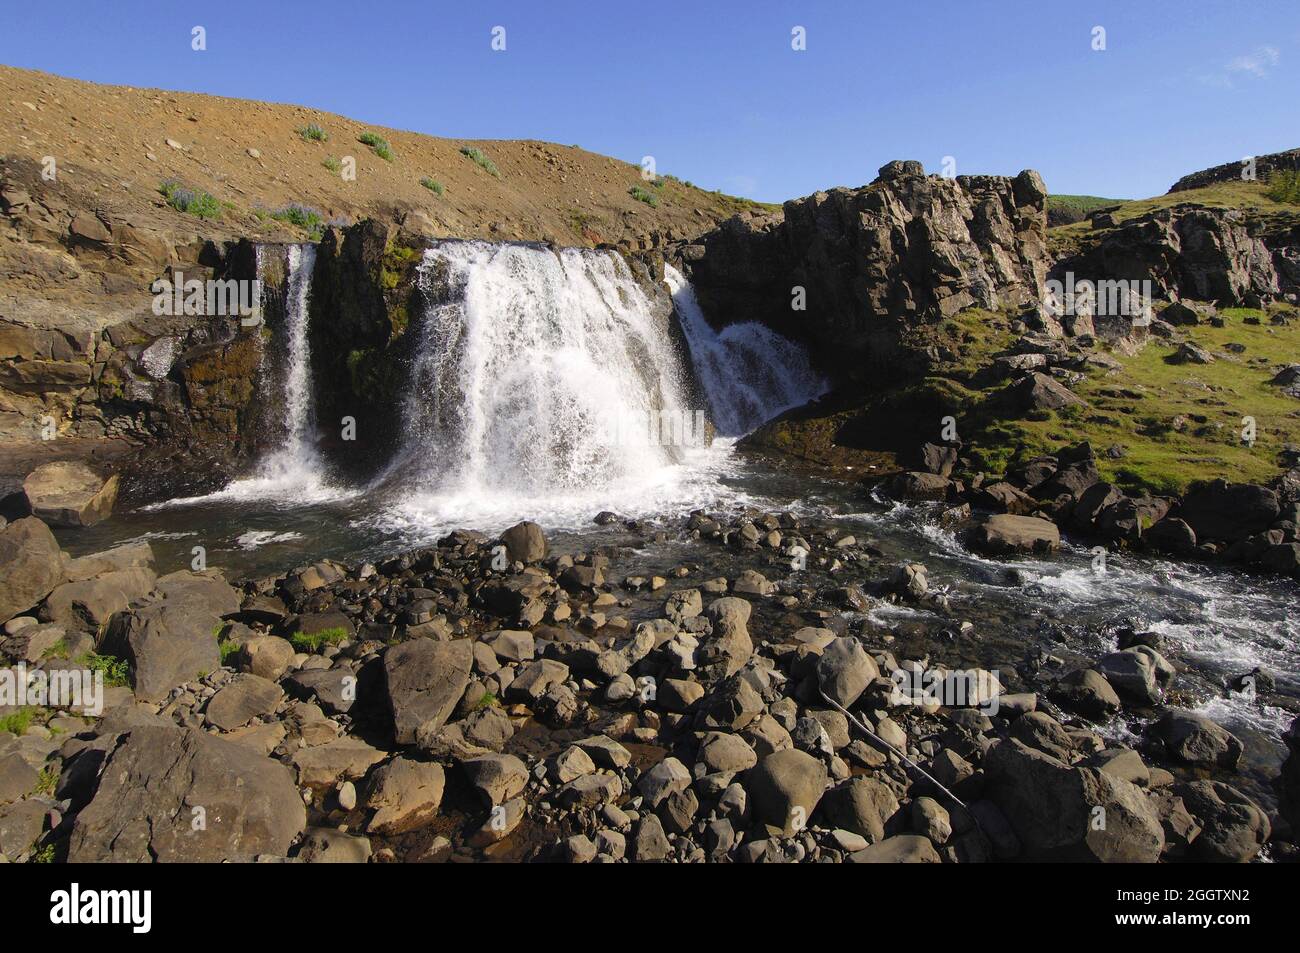 Chute d'eau et lit de ruisseau rocheux, Hvalfjordur, Islande Banque D'Images